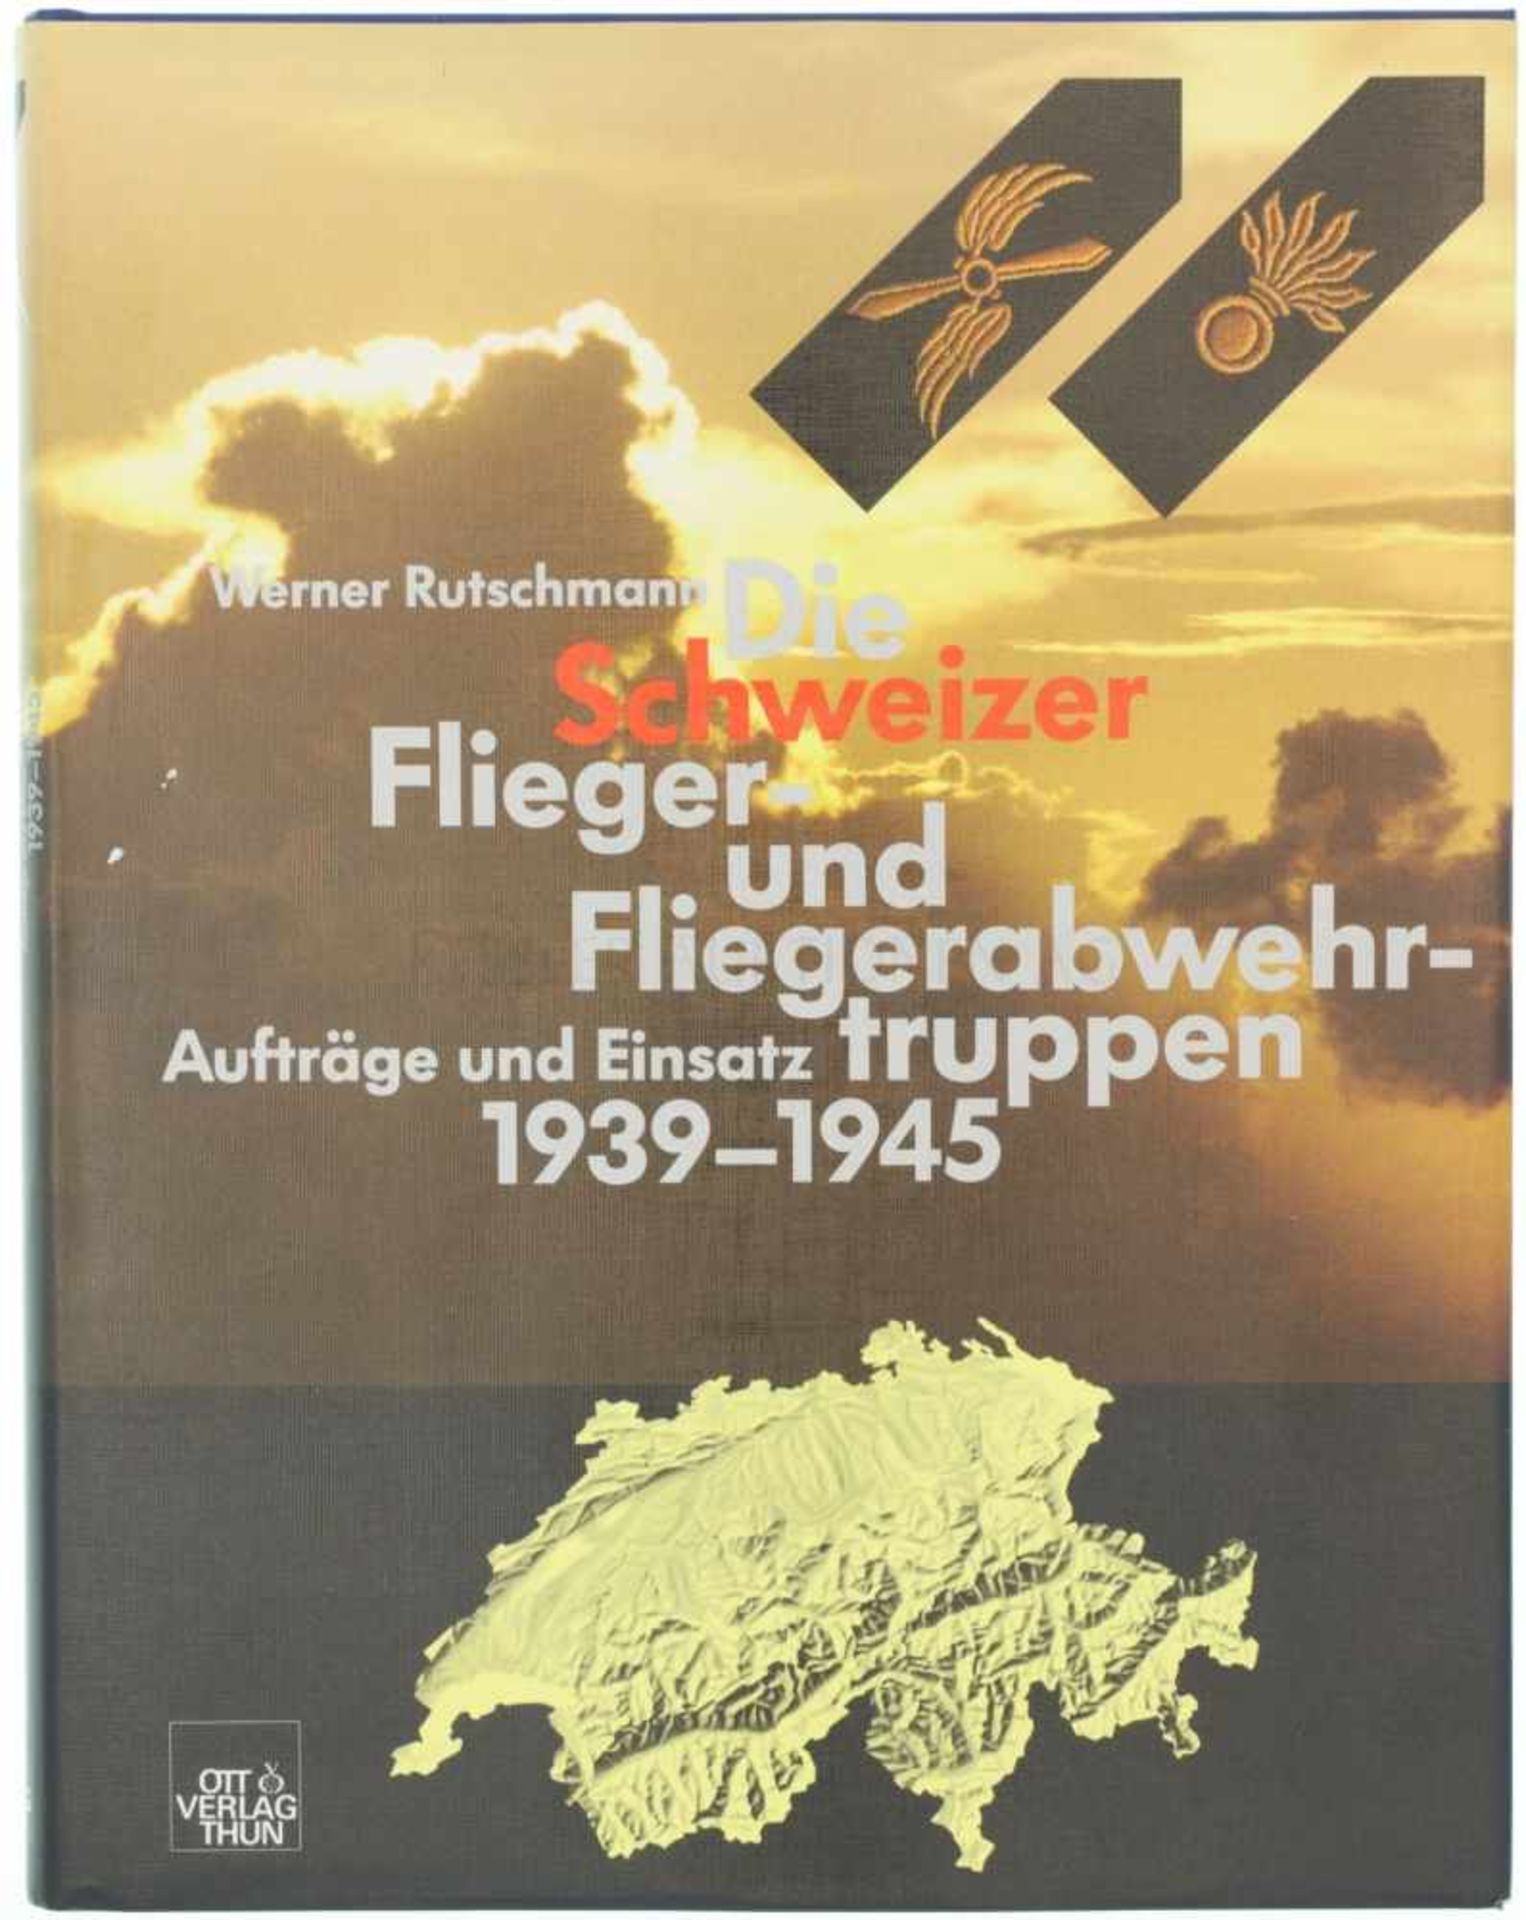 Die Schweizer Flieger-und Fliegerabwehrtruppen, 1939-1945 Der Autor Werner Rutschmann beschreibt